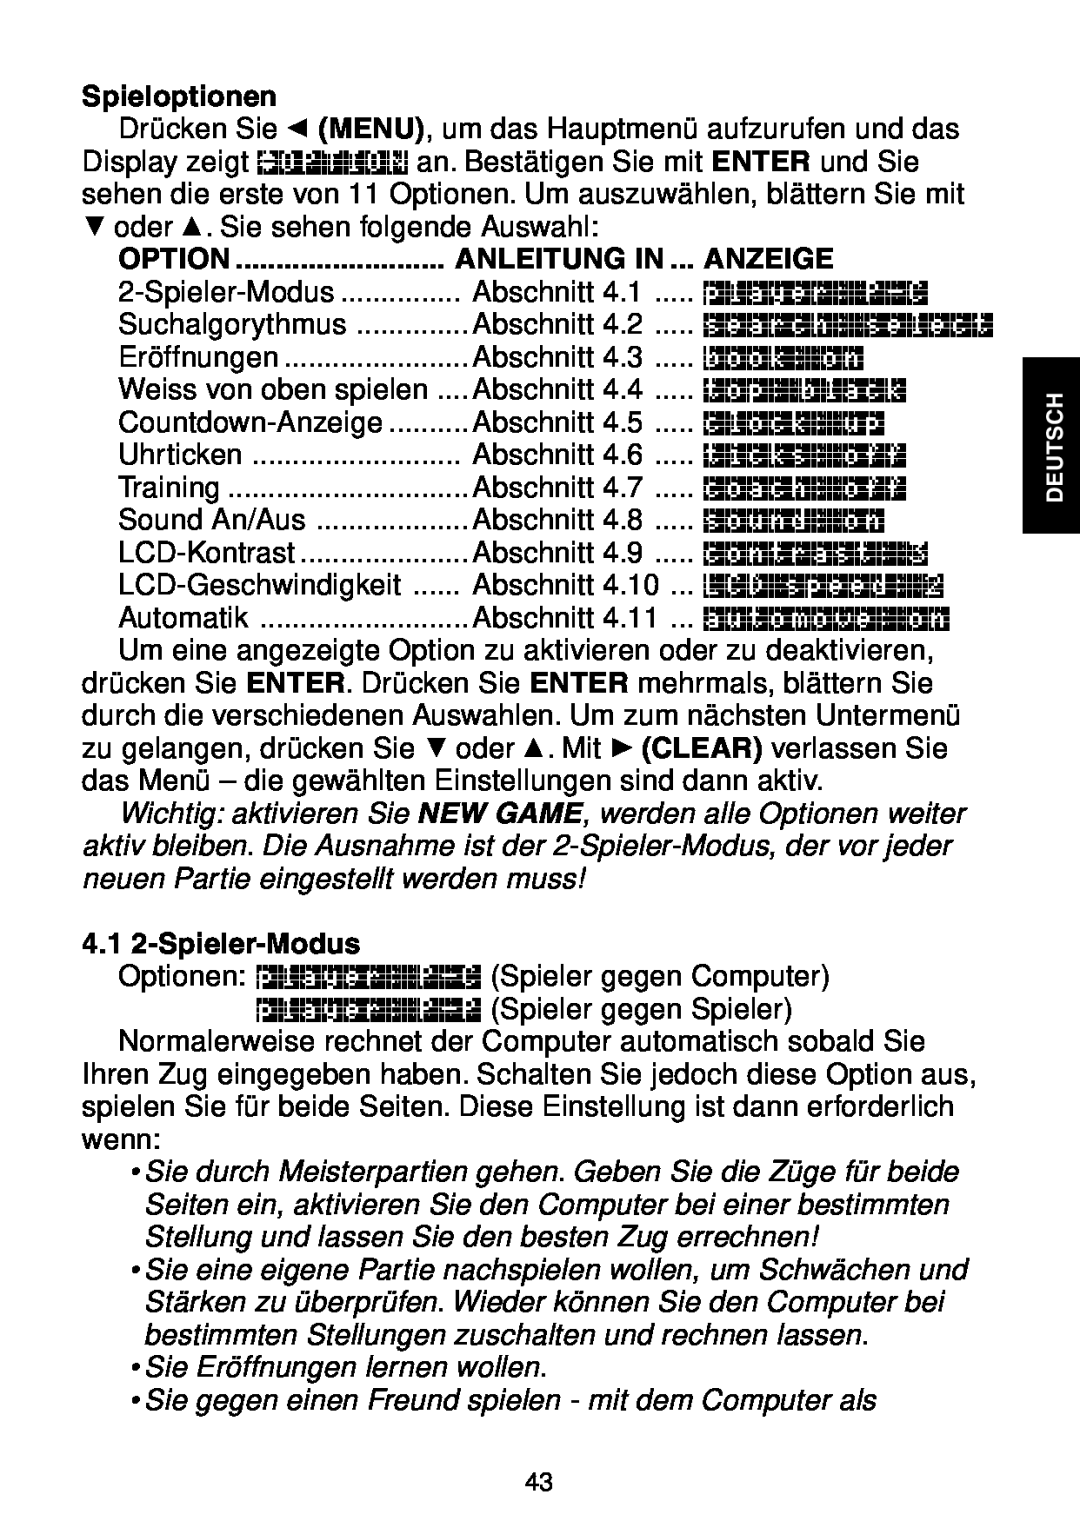 Saitek Maestro Travel Chess Computer manual Spieloptionen, Option, Anleitung In, Anzeige, 4.1 2-Spieler-Modus 